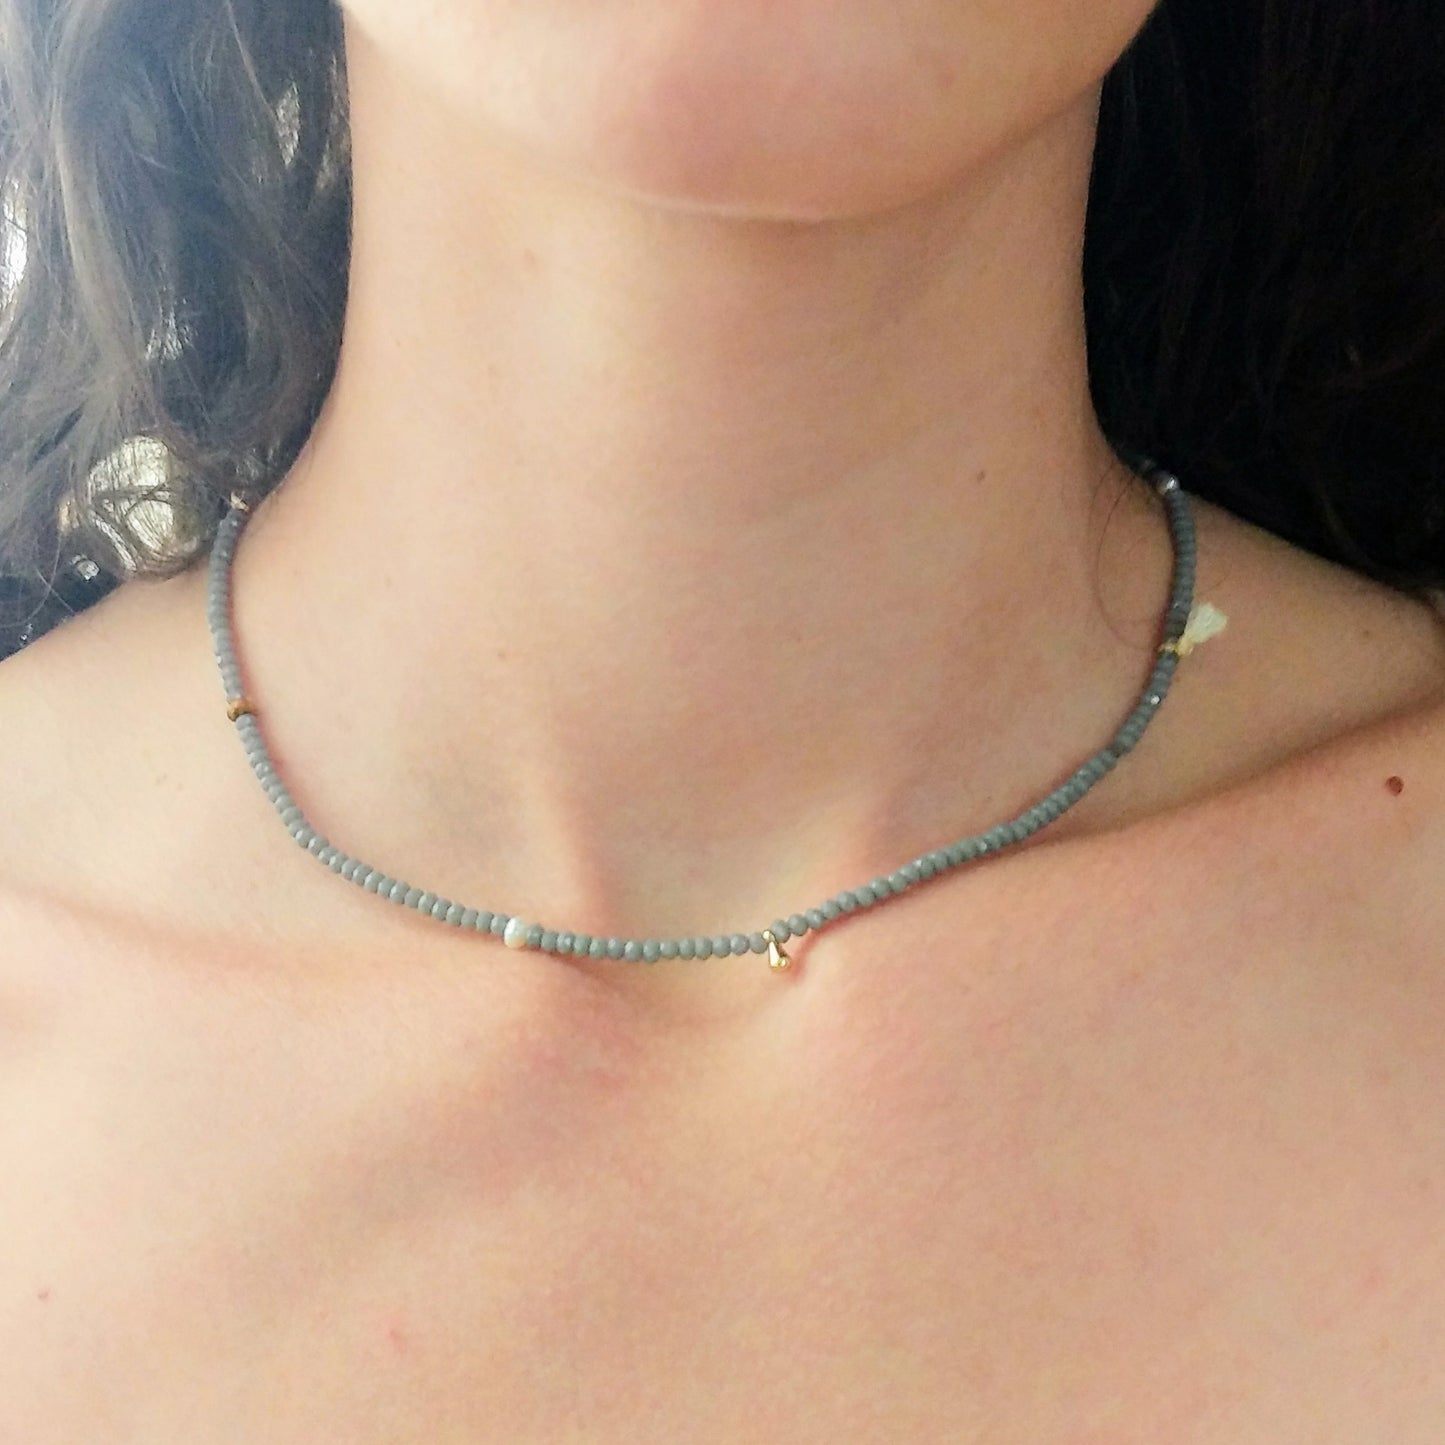 Kurze Halskette | Choker mit kleinen Edelsteinen, Süßwasserperlen und Quasten